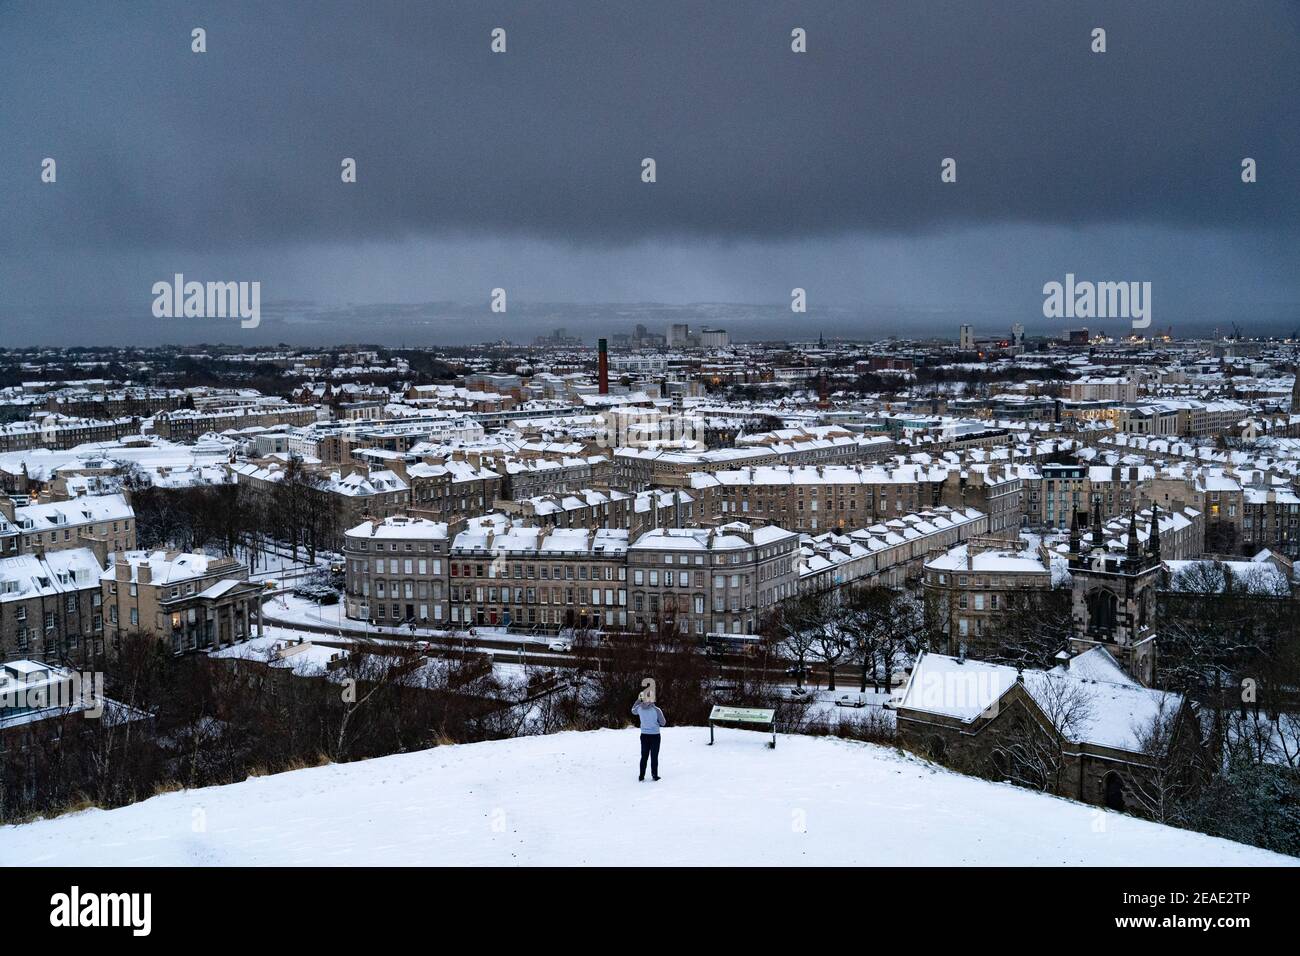 Edimburgo, Scozia, Regno Unito. 9 Feb 2021. Big Freeze continua nel Regno Unito con Storm Darcy portando diversi centimetri di neve a Edimburgo durante la notte. PIC; tetti innevati a Leith vista da Calton Hill. Iain Masterton/Alamy Notizie dal vivo Foto Stock